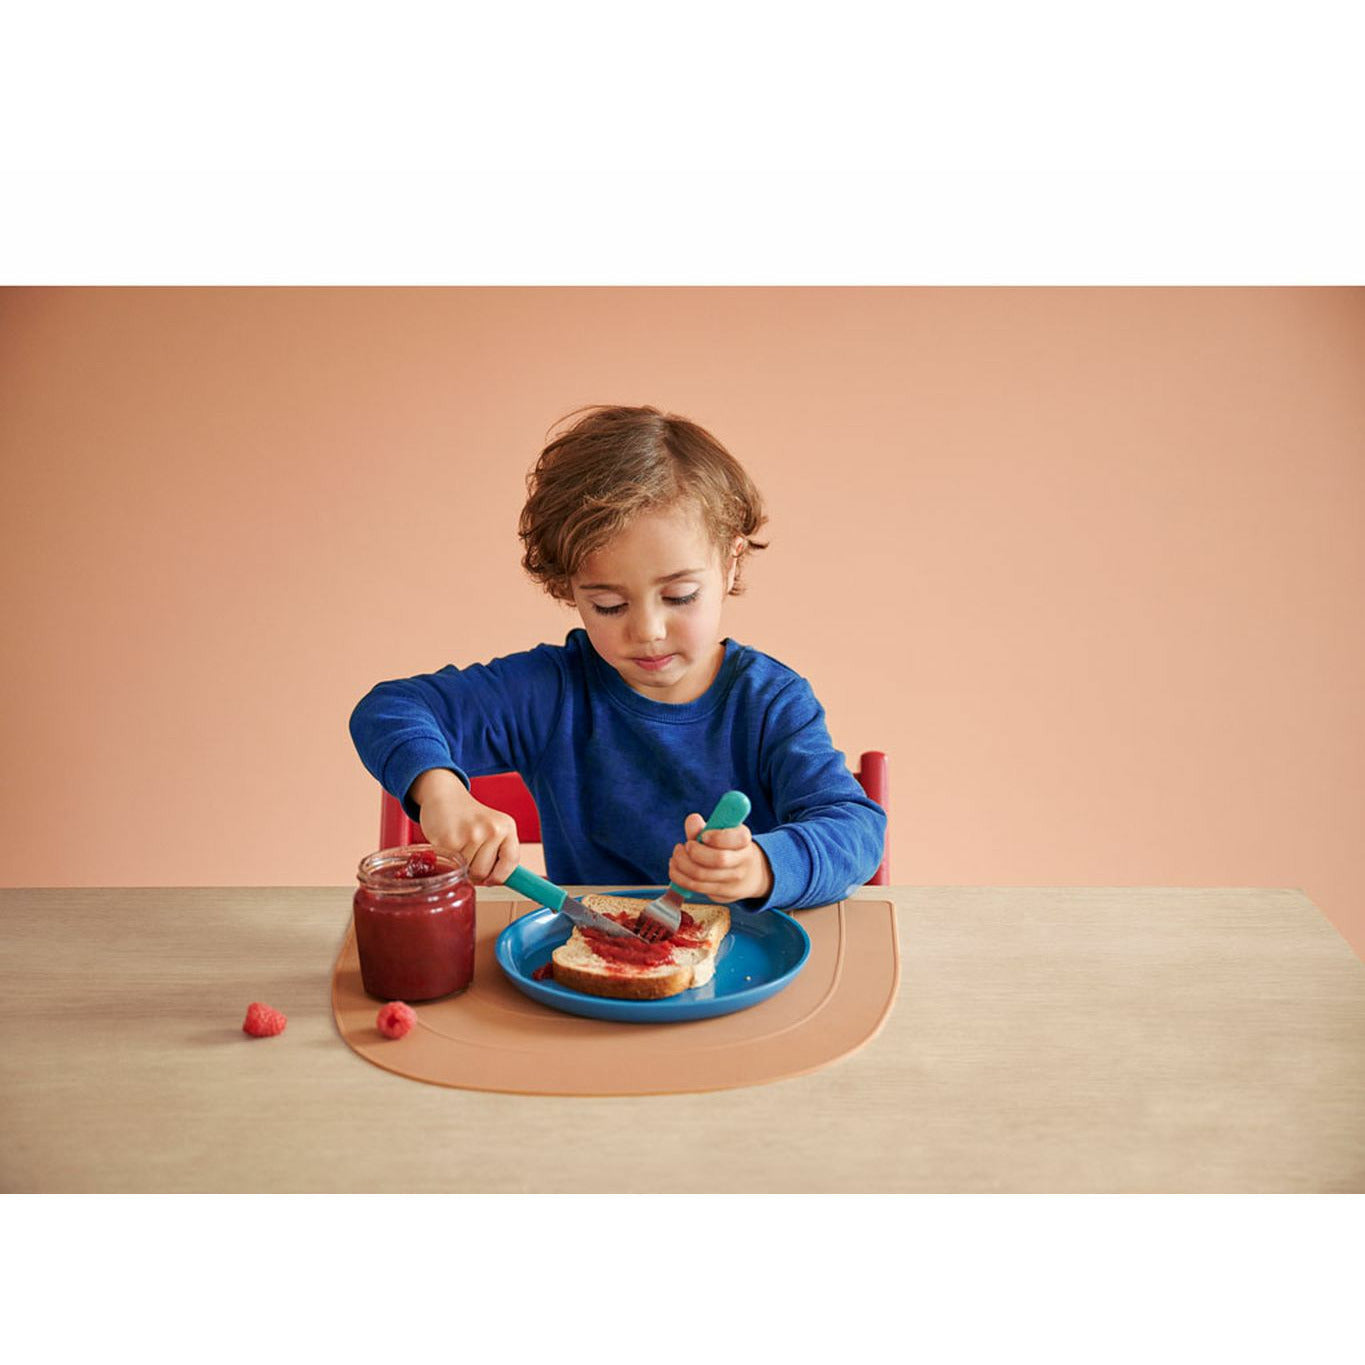 Mépal Mio Children's Cutlery Set 3 PCS, Turquoise